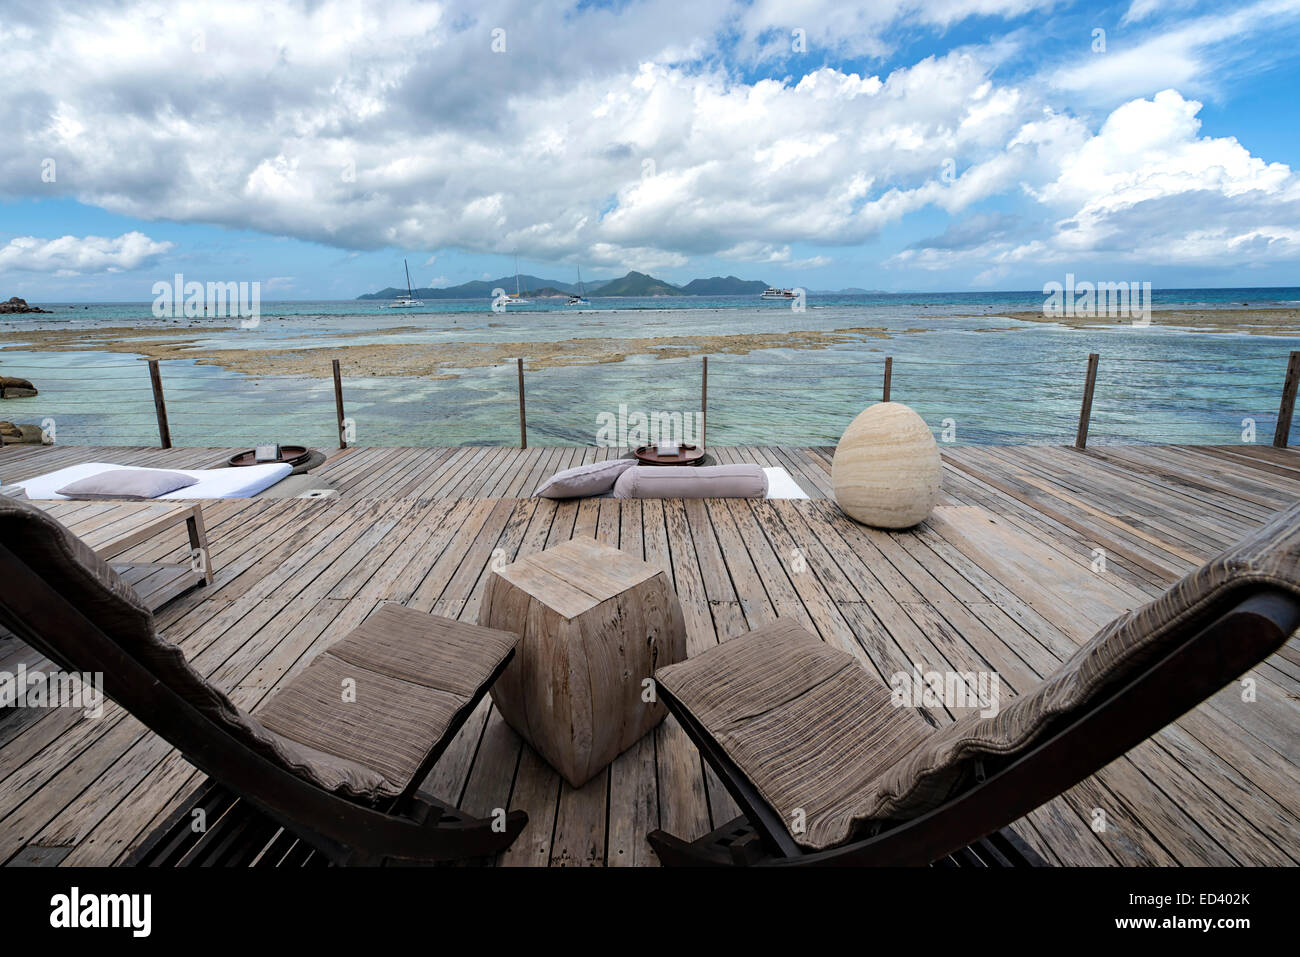 Le Domaine de L'Orangeraie Resort in La Digue, Seychelles Stock Photo